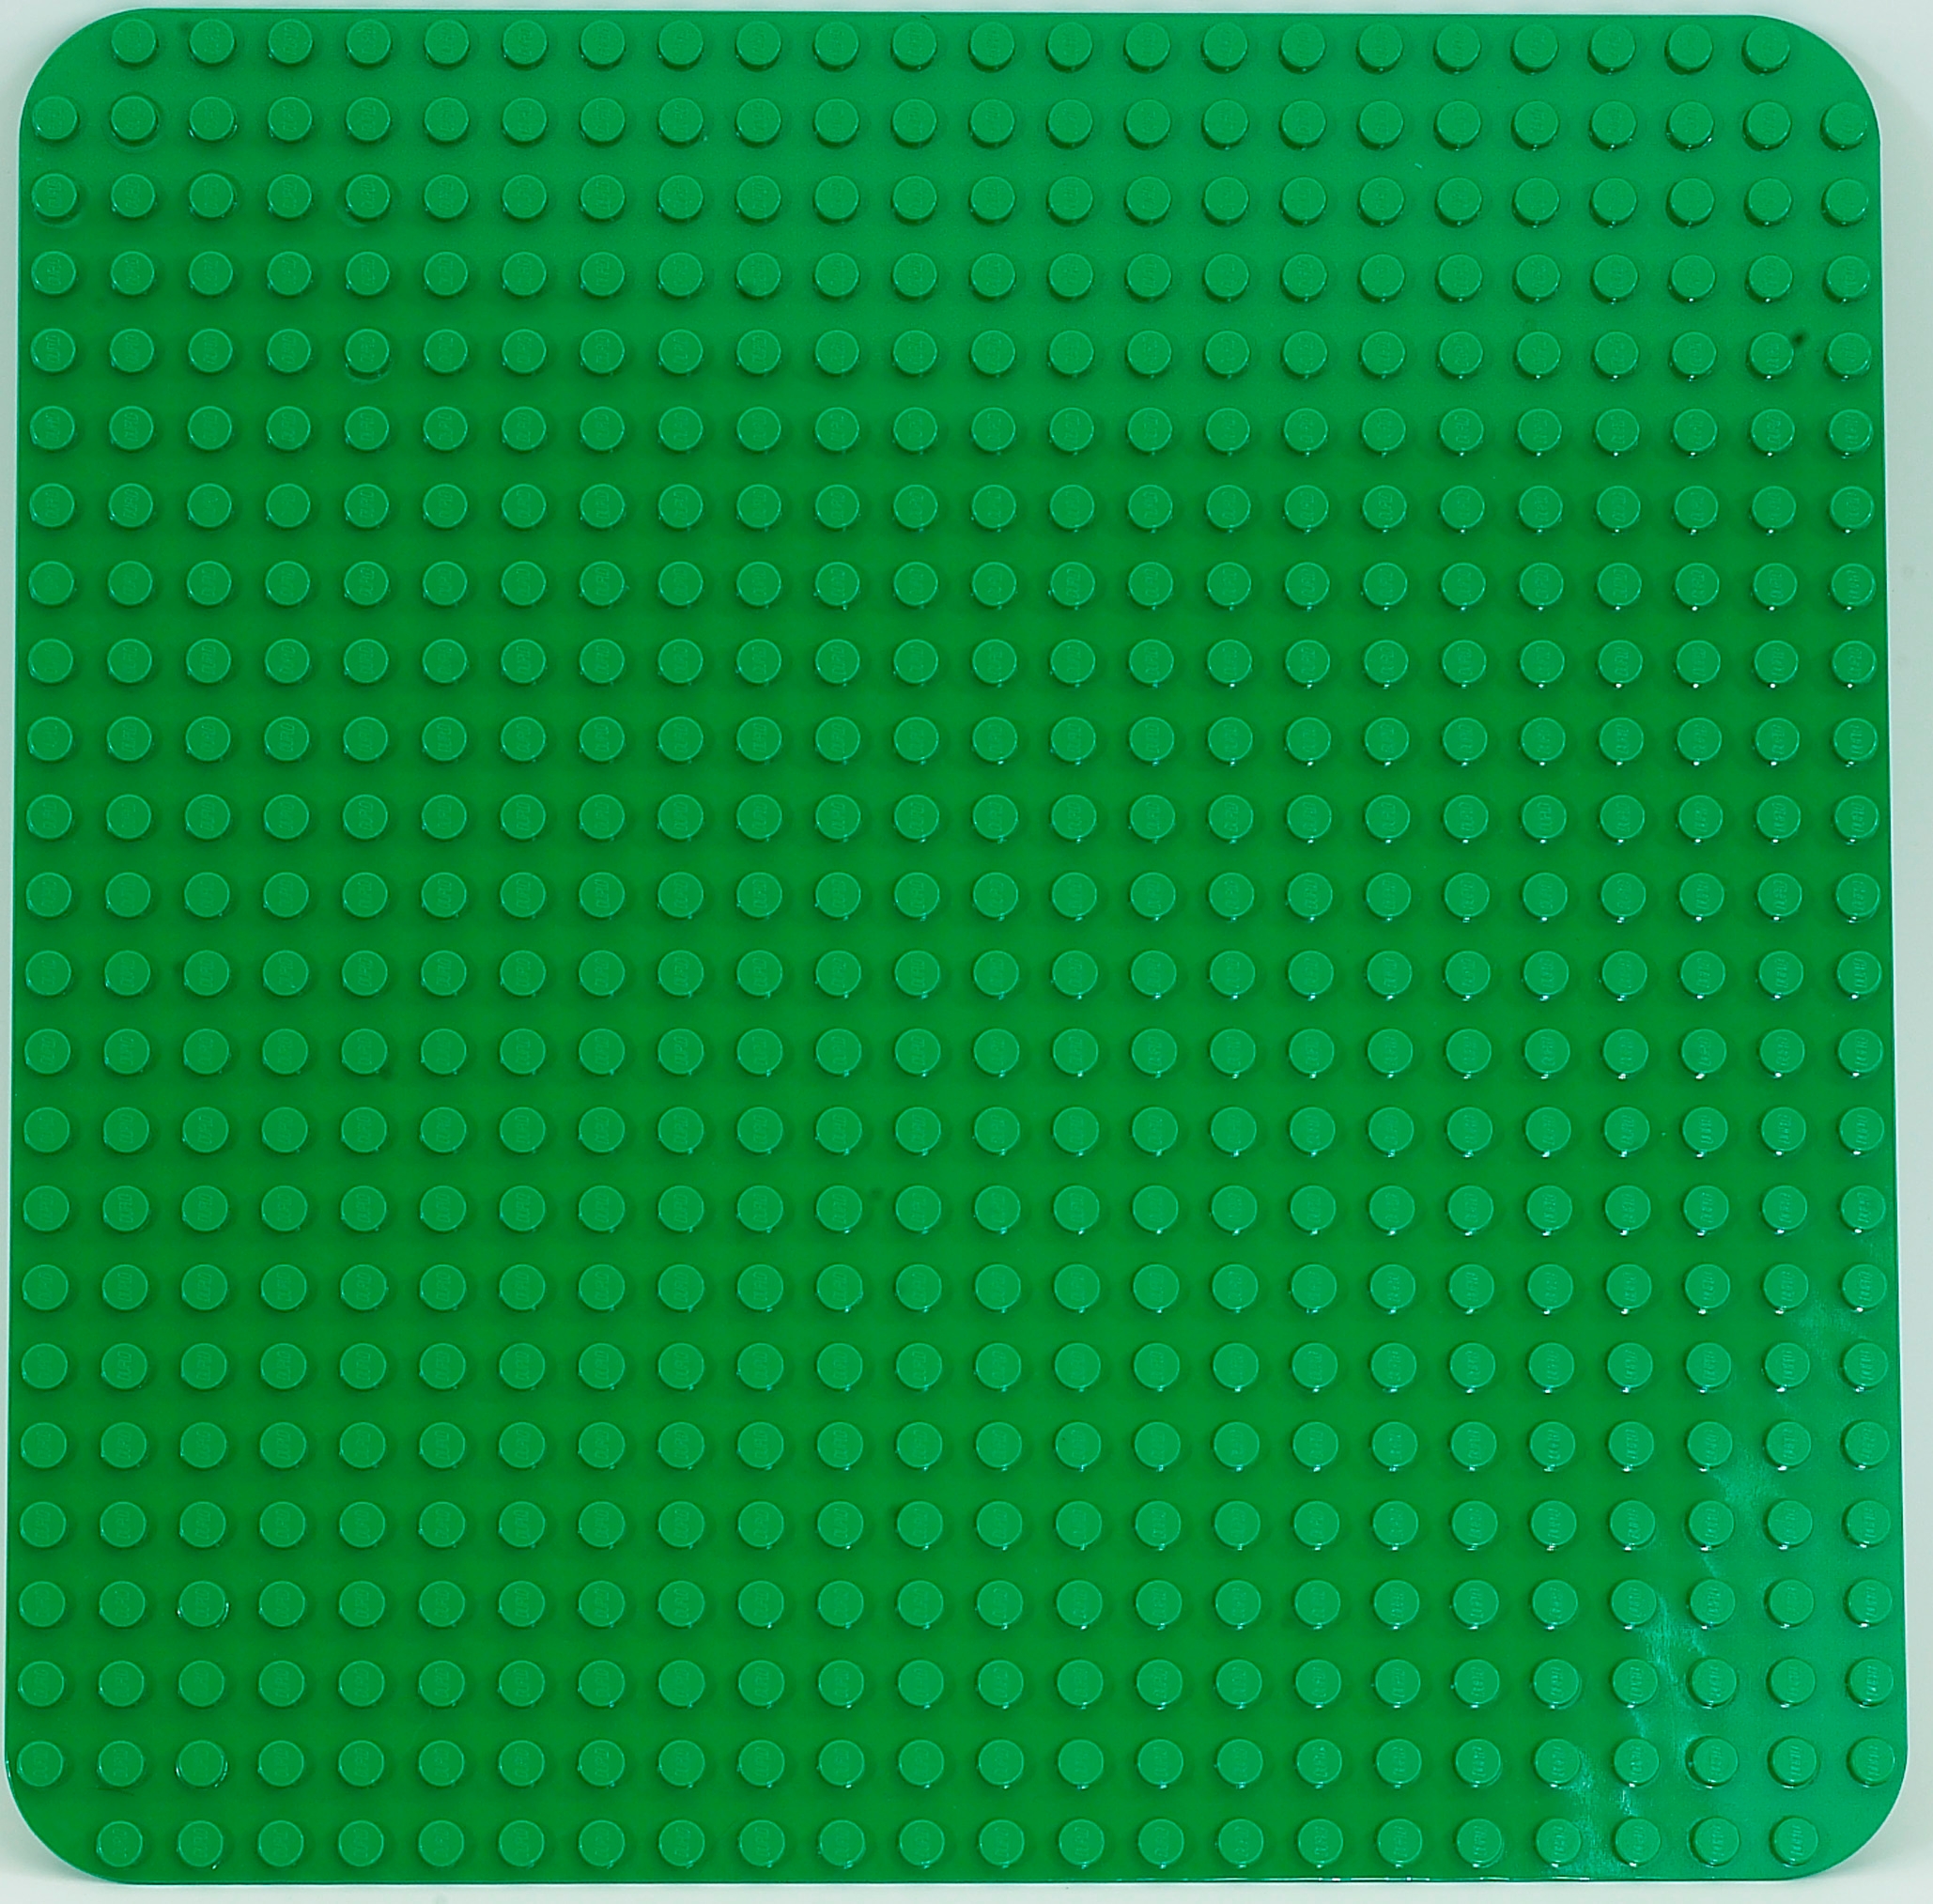 LEGO Green Baseplate 16 x 24 (3334)